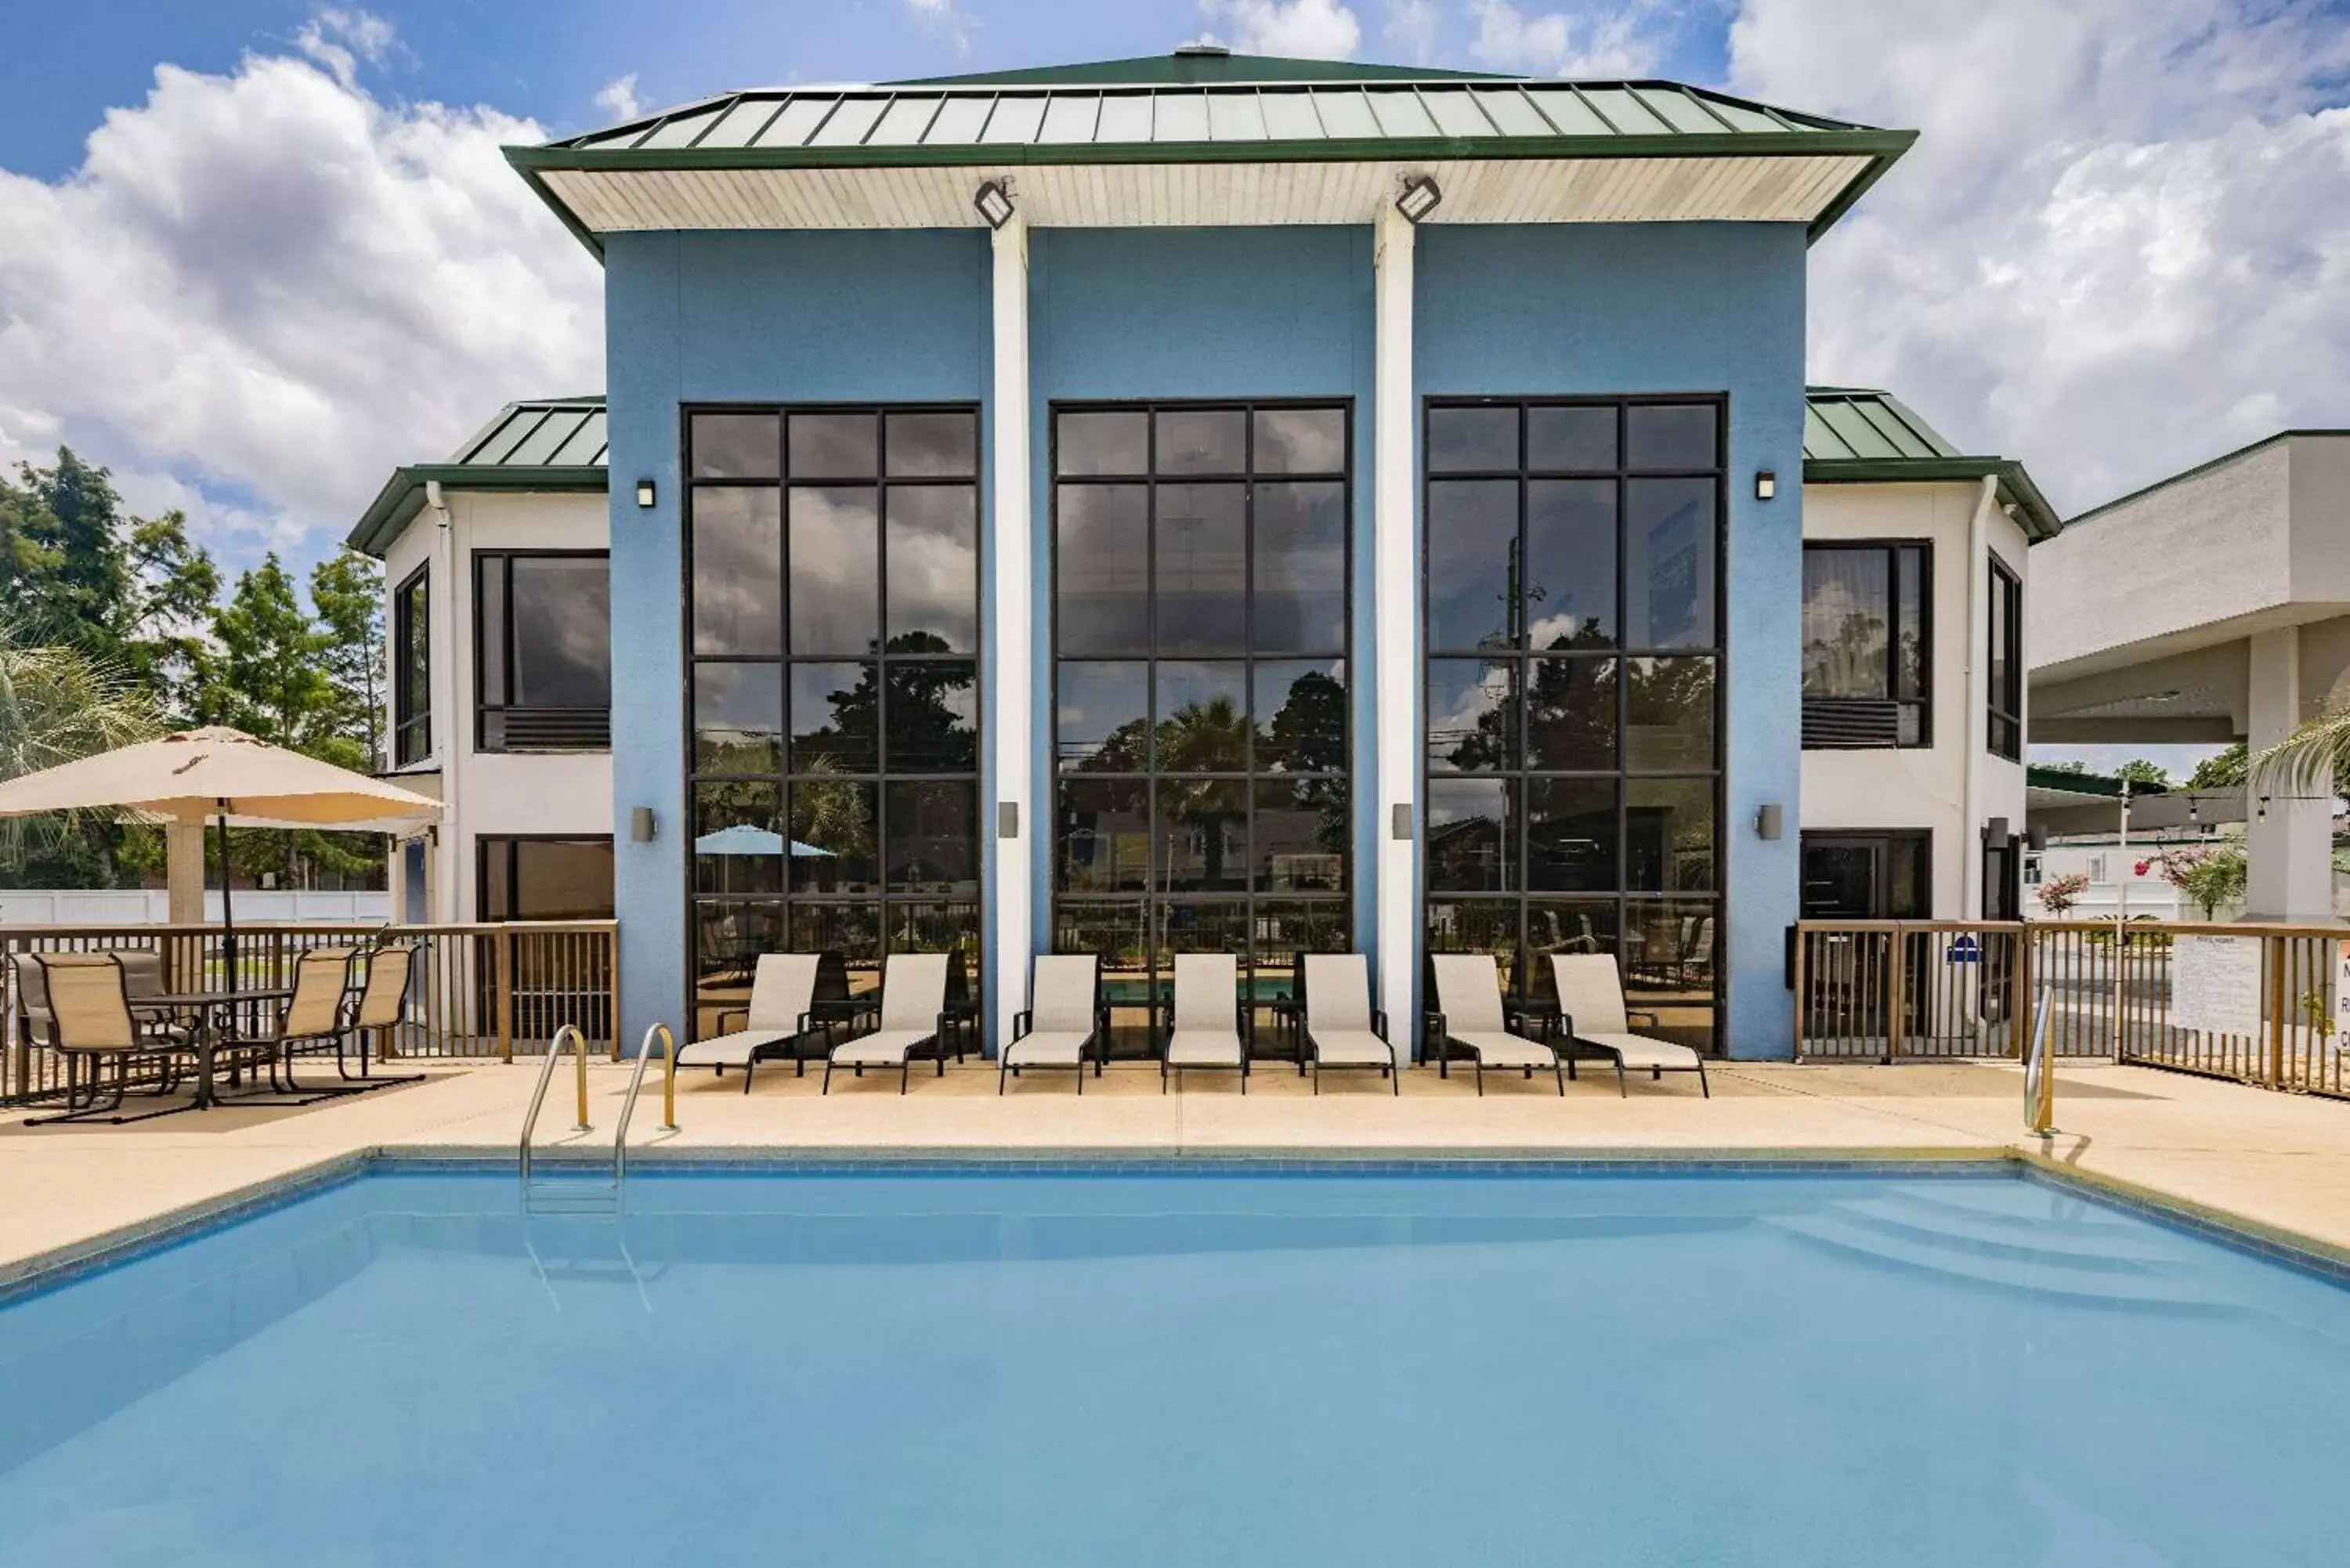 Pool view, Property Building in Days Inn & Suites by Wyndham Savannah Midtown